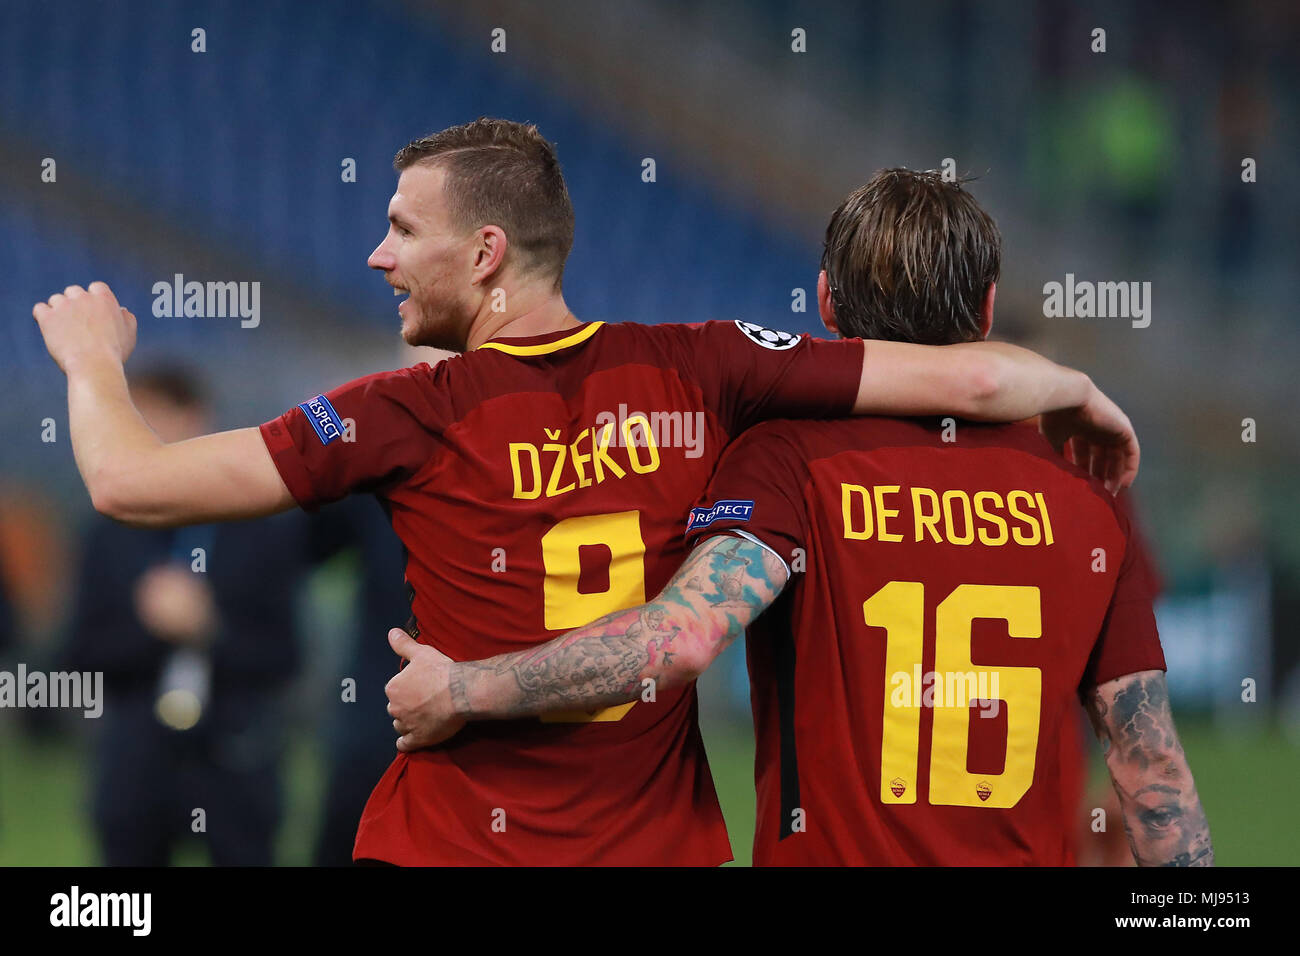 Esultanza a fine partita per la qualificazione alla semifinale Edin Dzeko Roma e Daniele De Rossi Roma Roma 10-04-2018 Stadio Olimpico Football Calcio Stock Photo